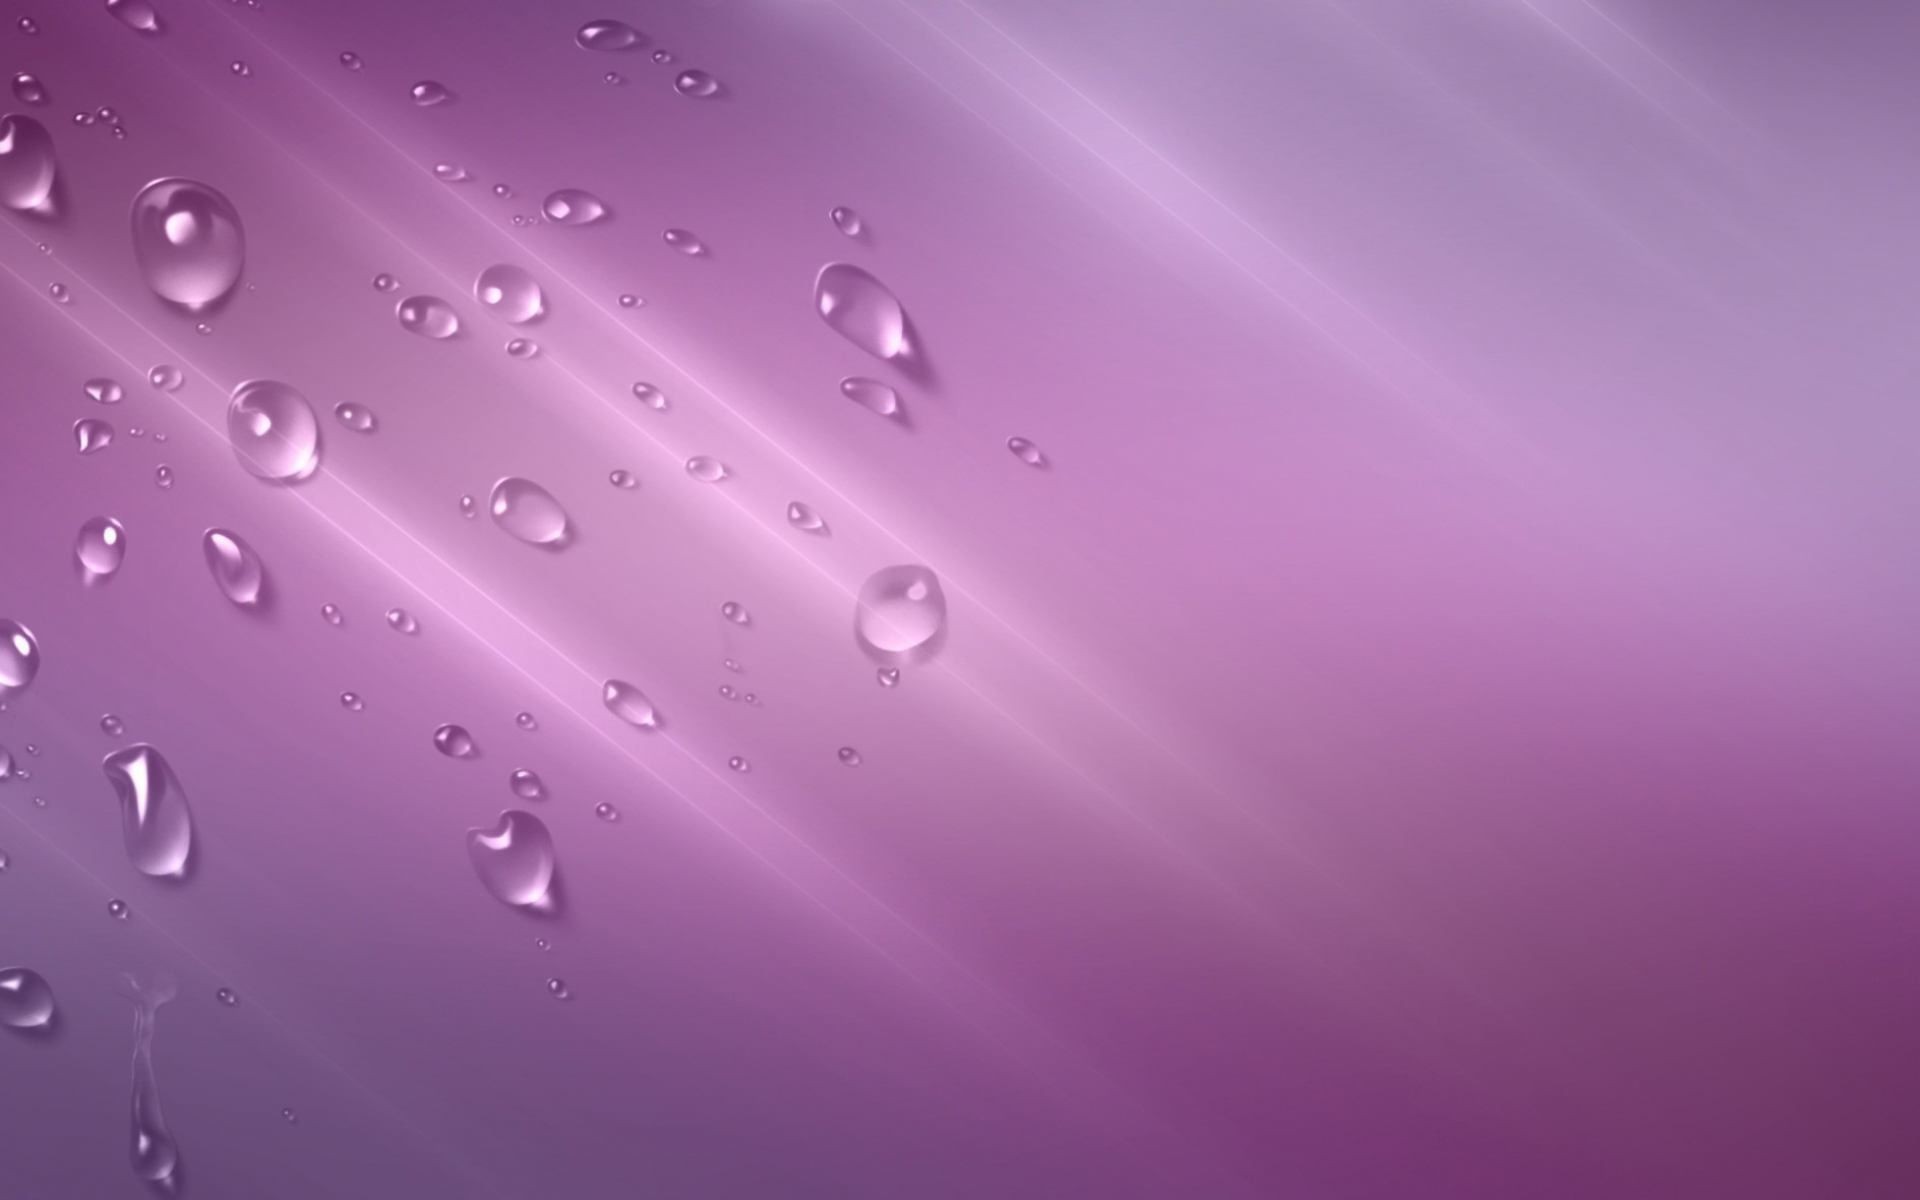 вода аннотация свет цвет обои размытость фон дождь текстура рабочего стола светит гладкая жидкость шаблон падение росы мокрый искусство чистые отражение